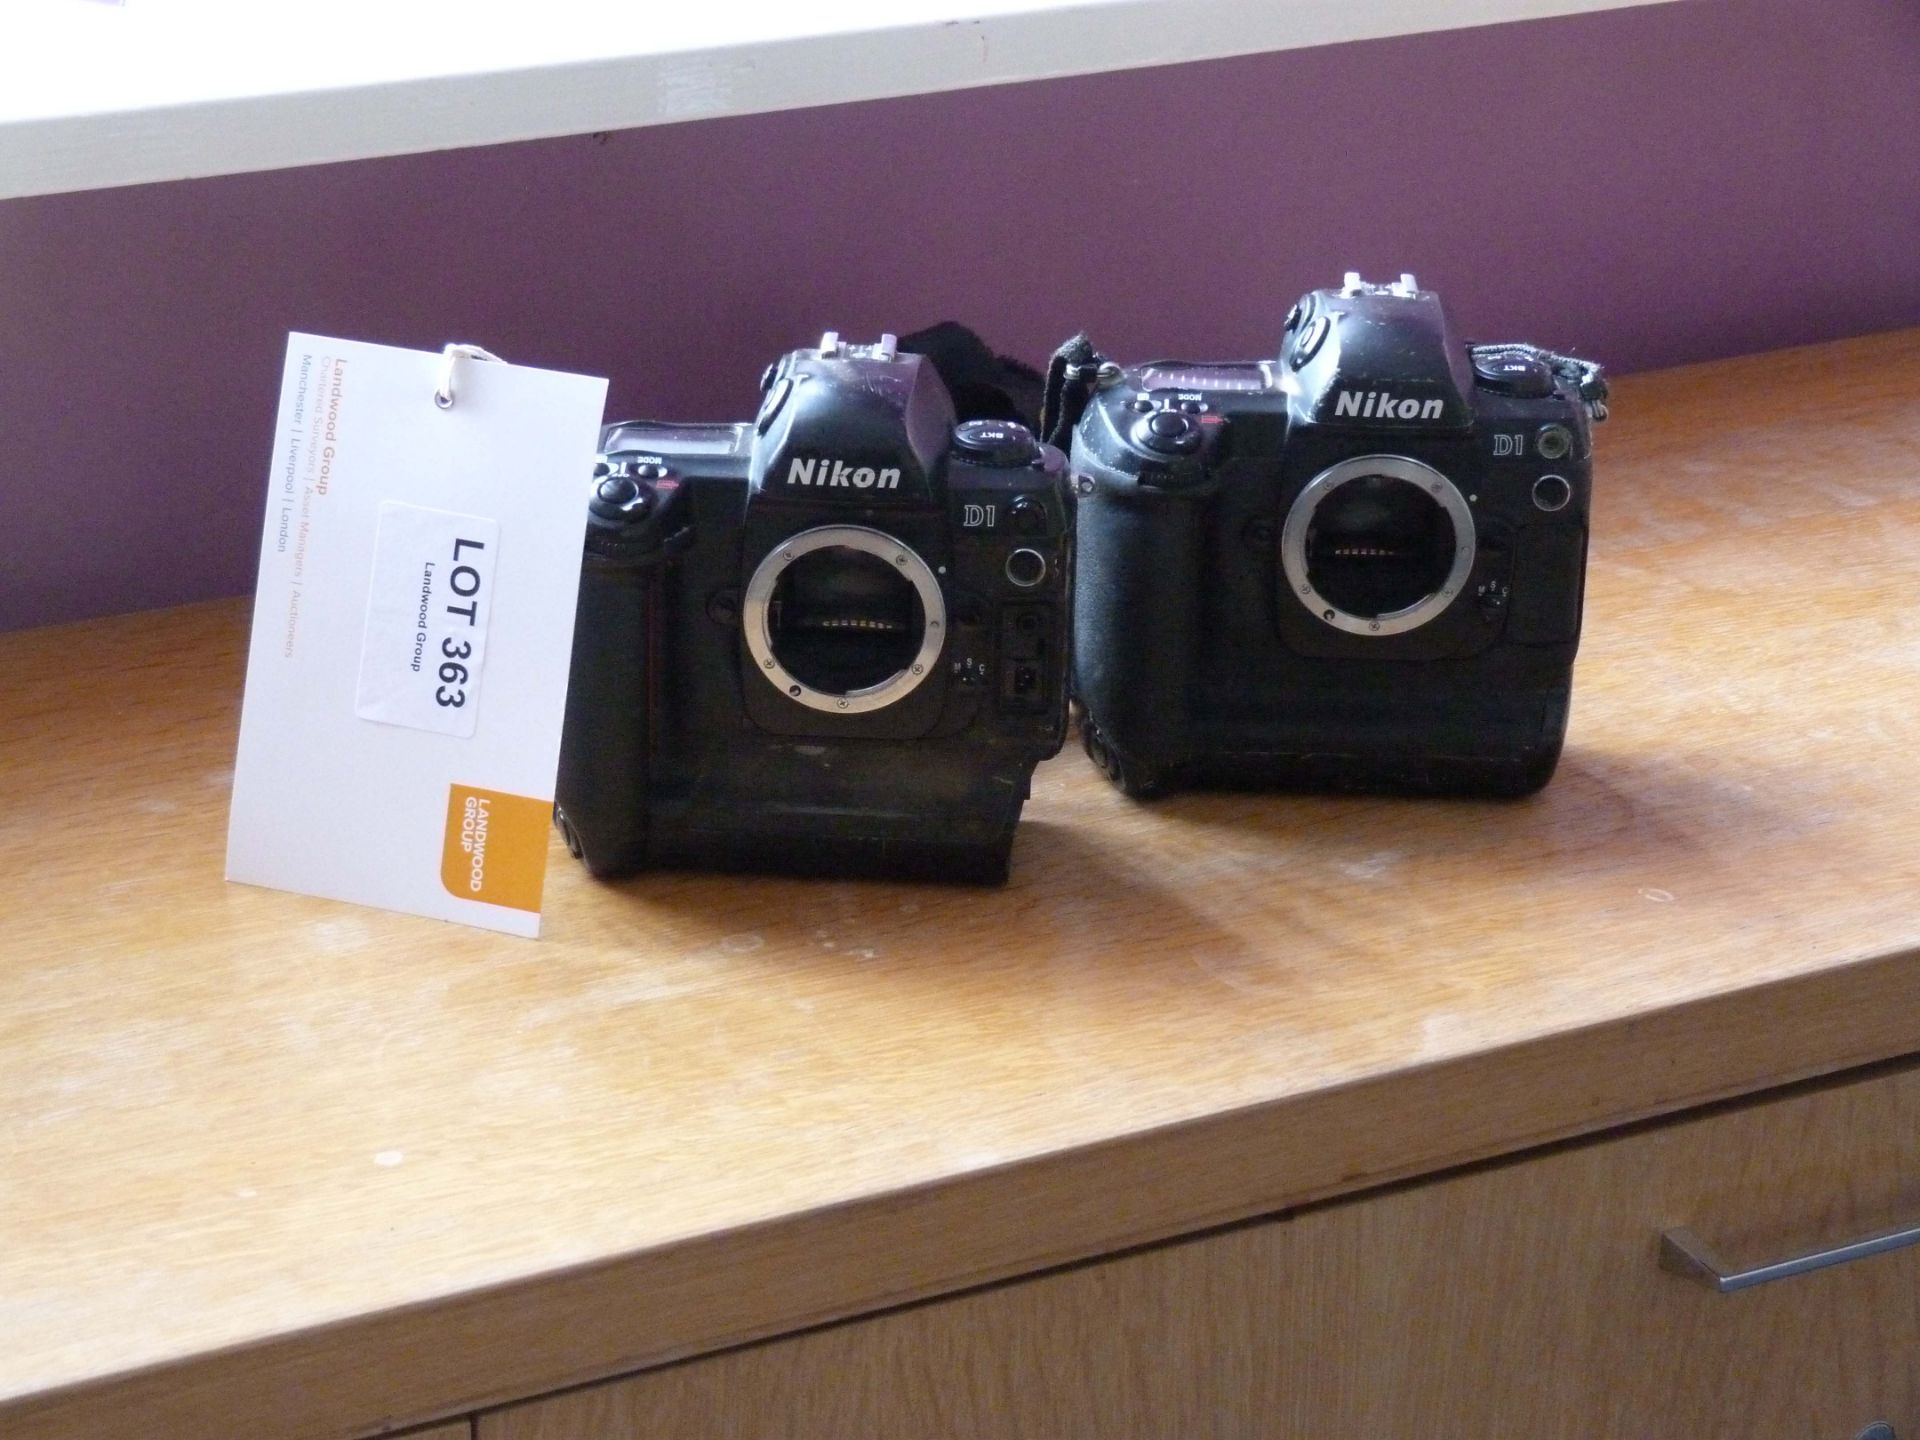 2 NIKON D1 DSLR Camera Bodies 1 battery